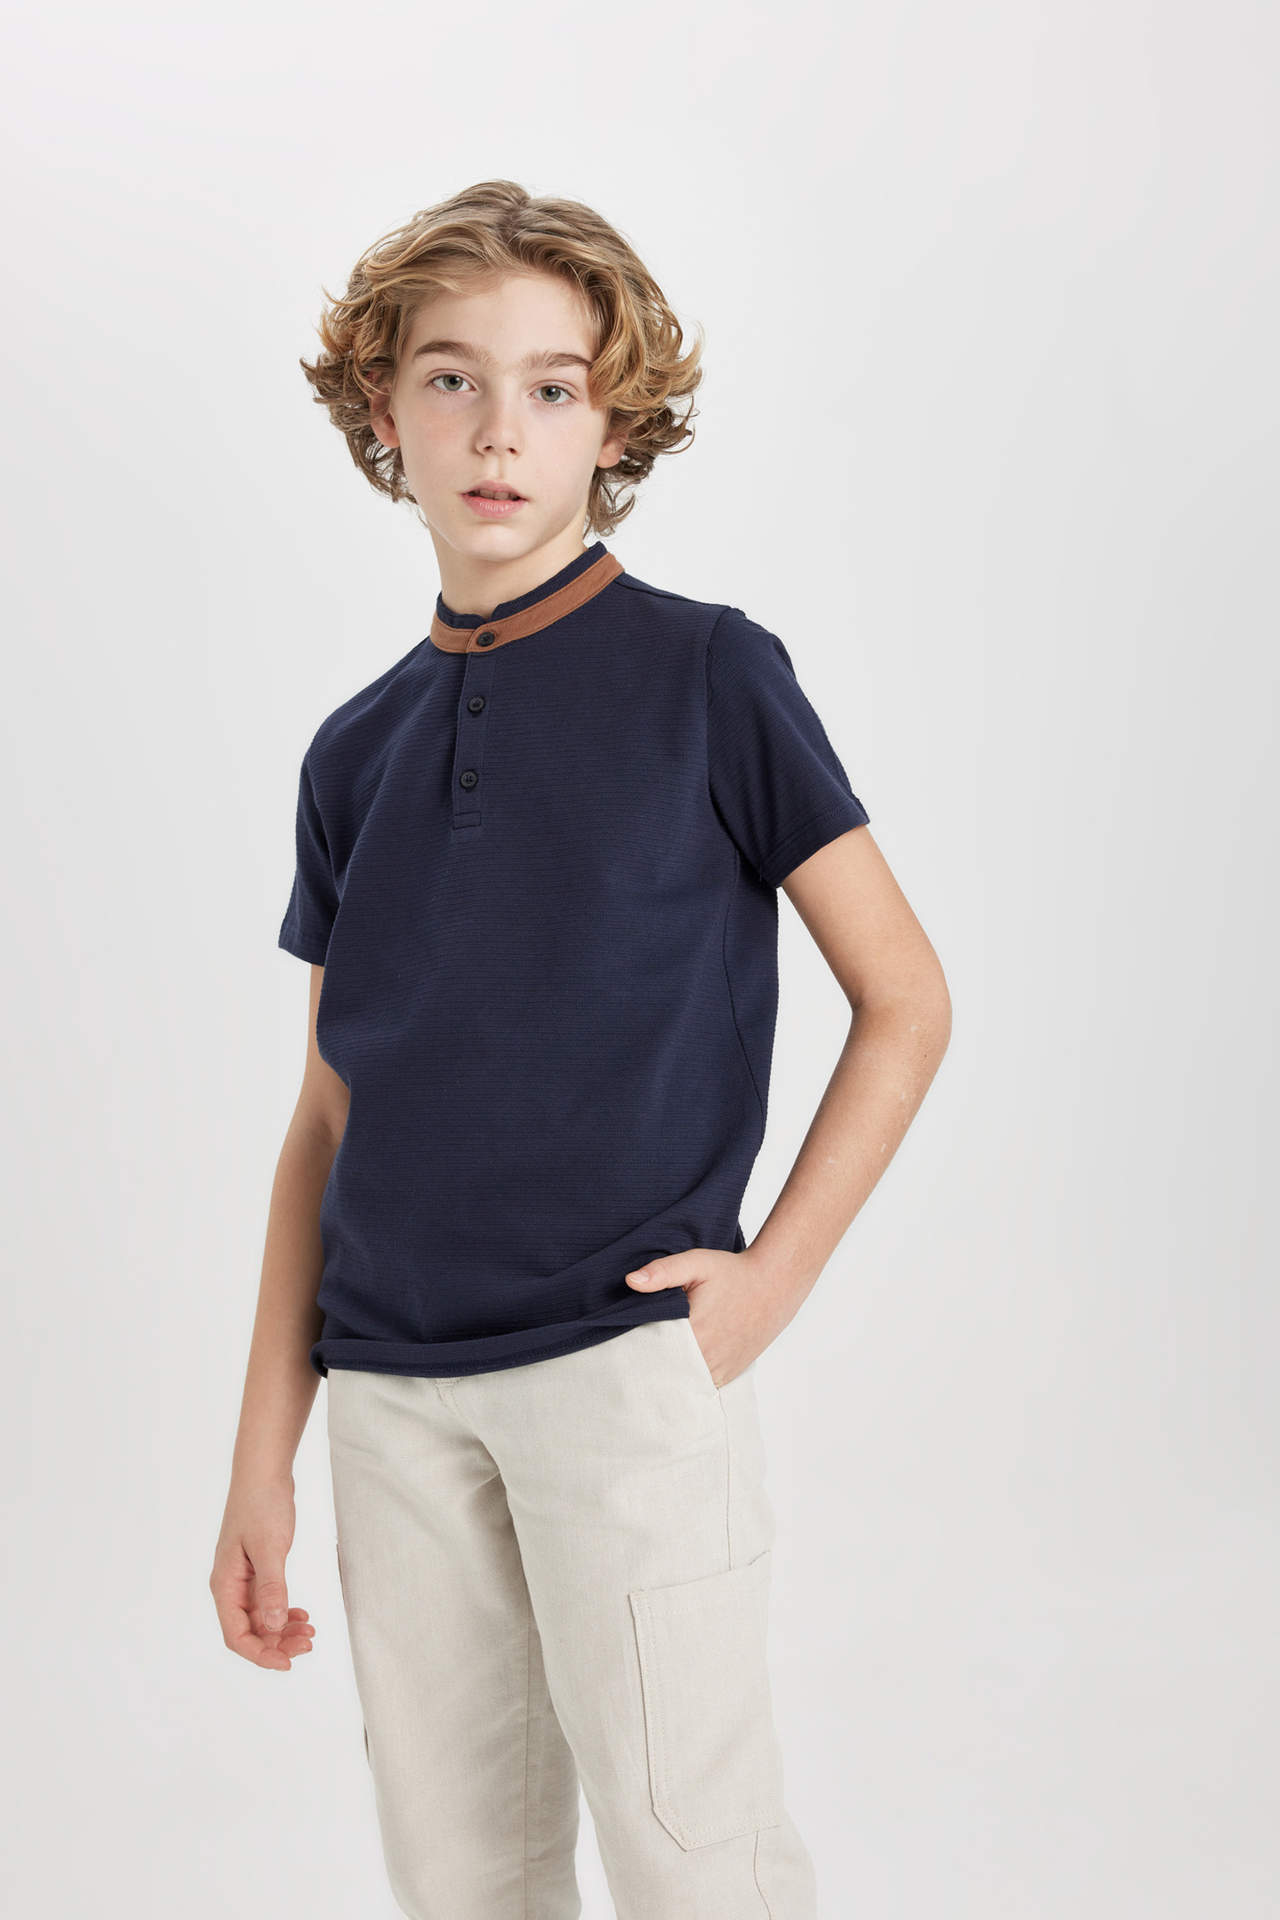 DEFACTO Boy High Collar Short Sleeve Polo T-Shirt